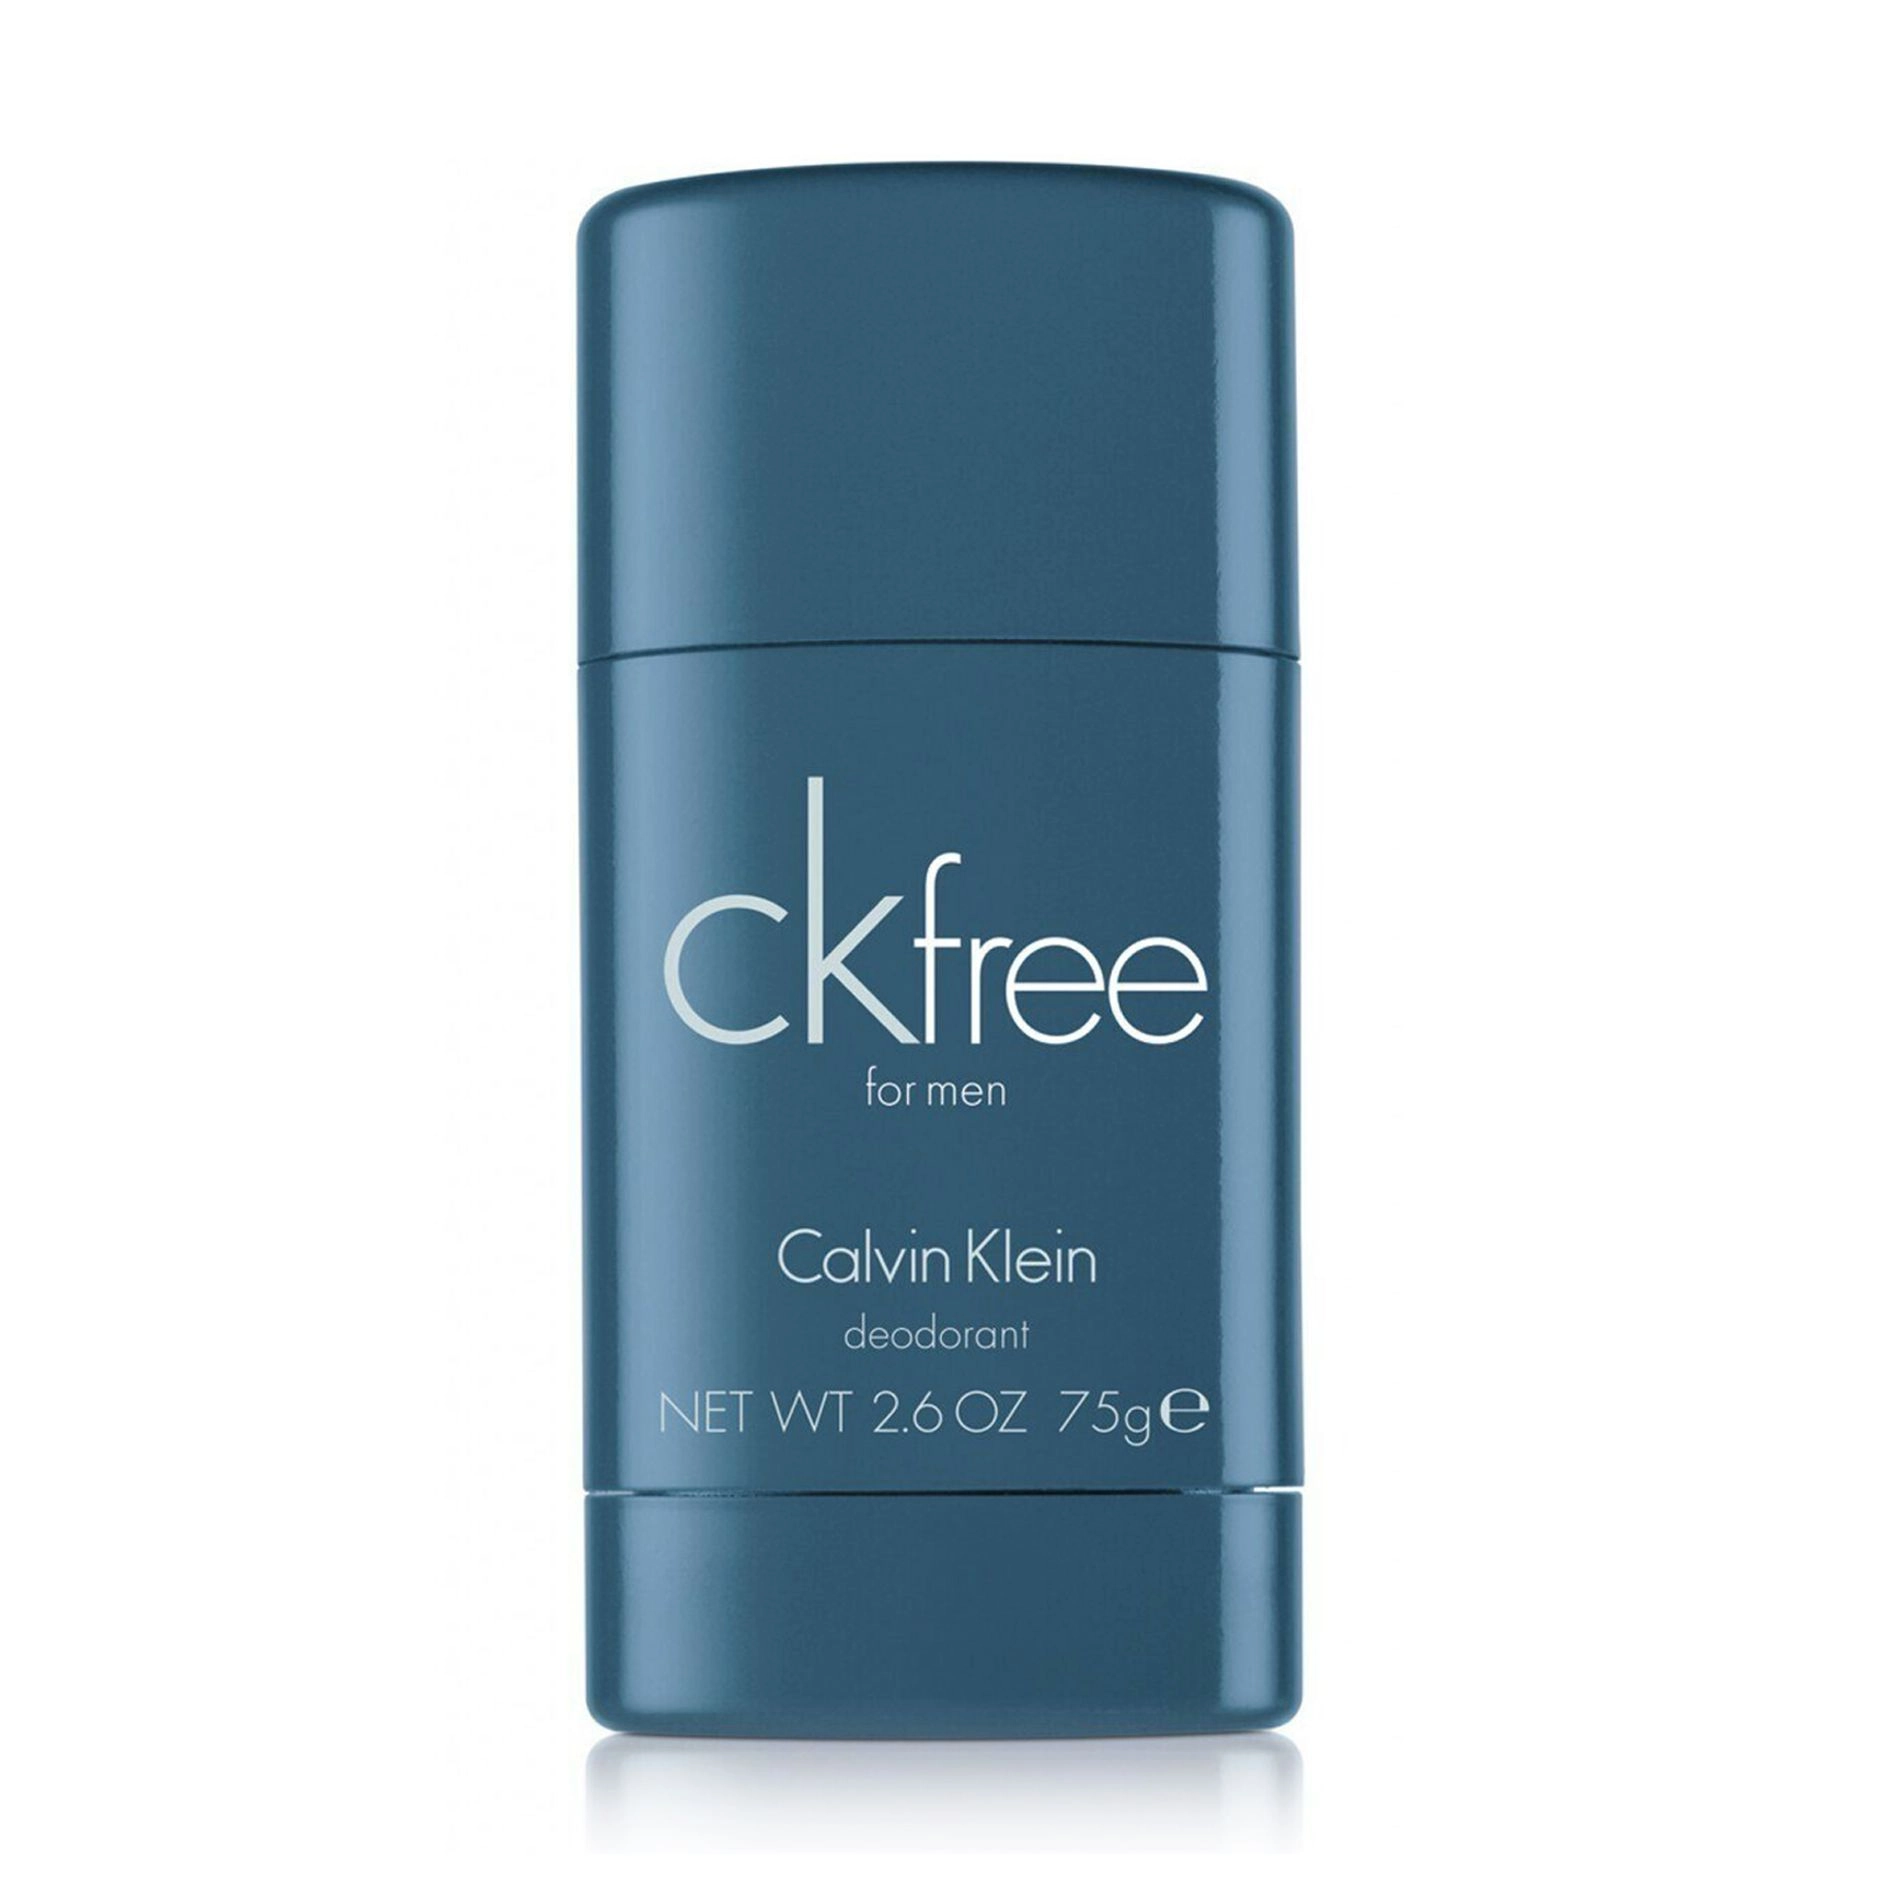 Calvin Klein Парфумований дезодорант-стік CK Free чоловічий, 75 г - фото N1